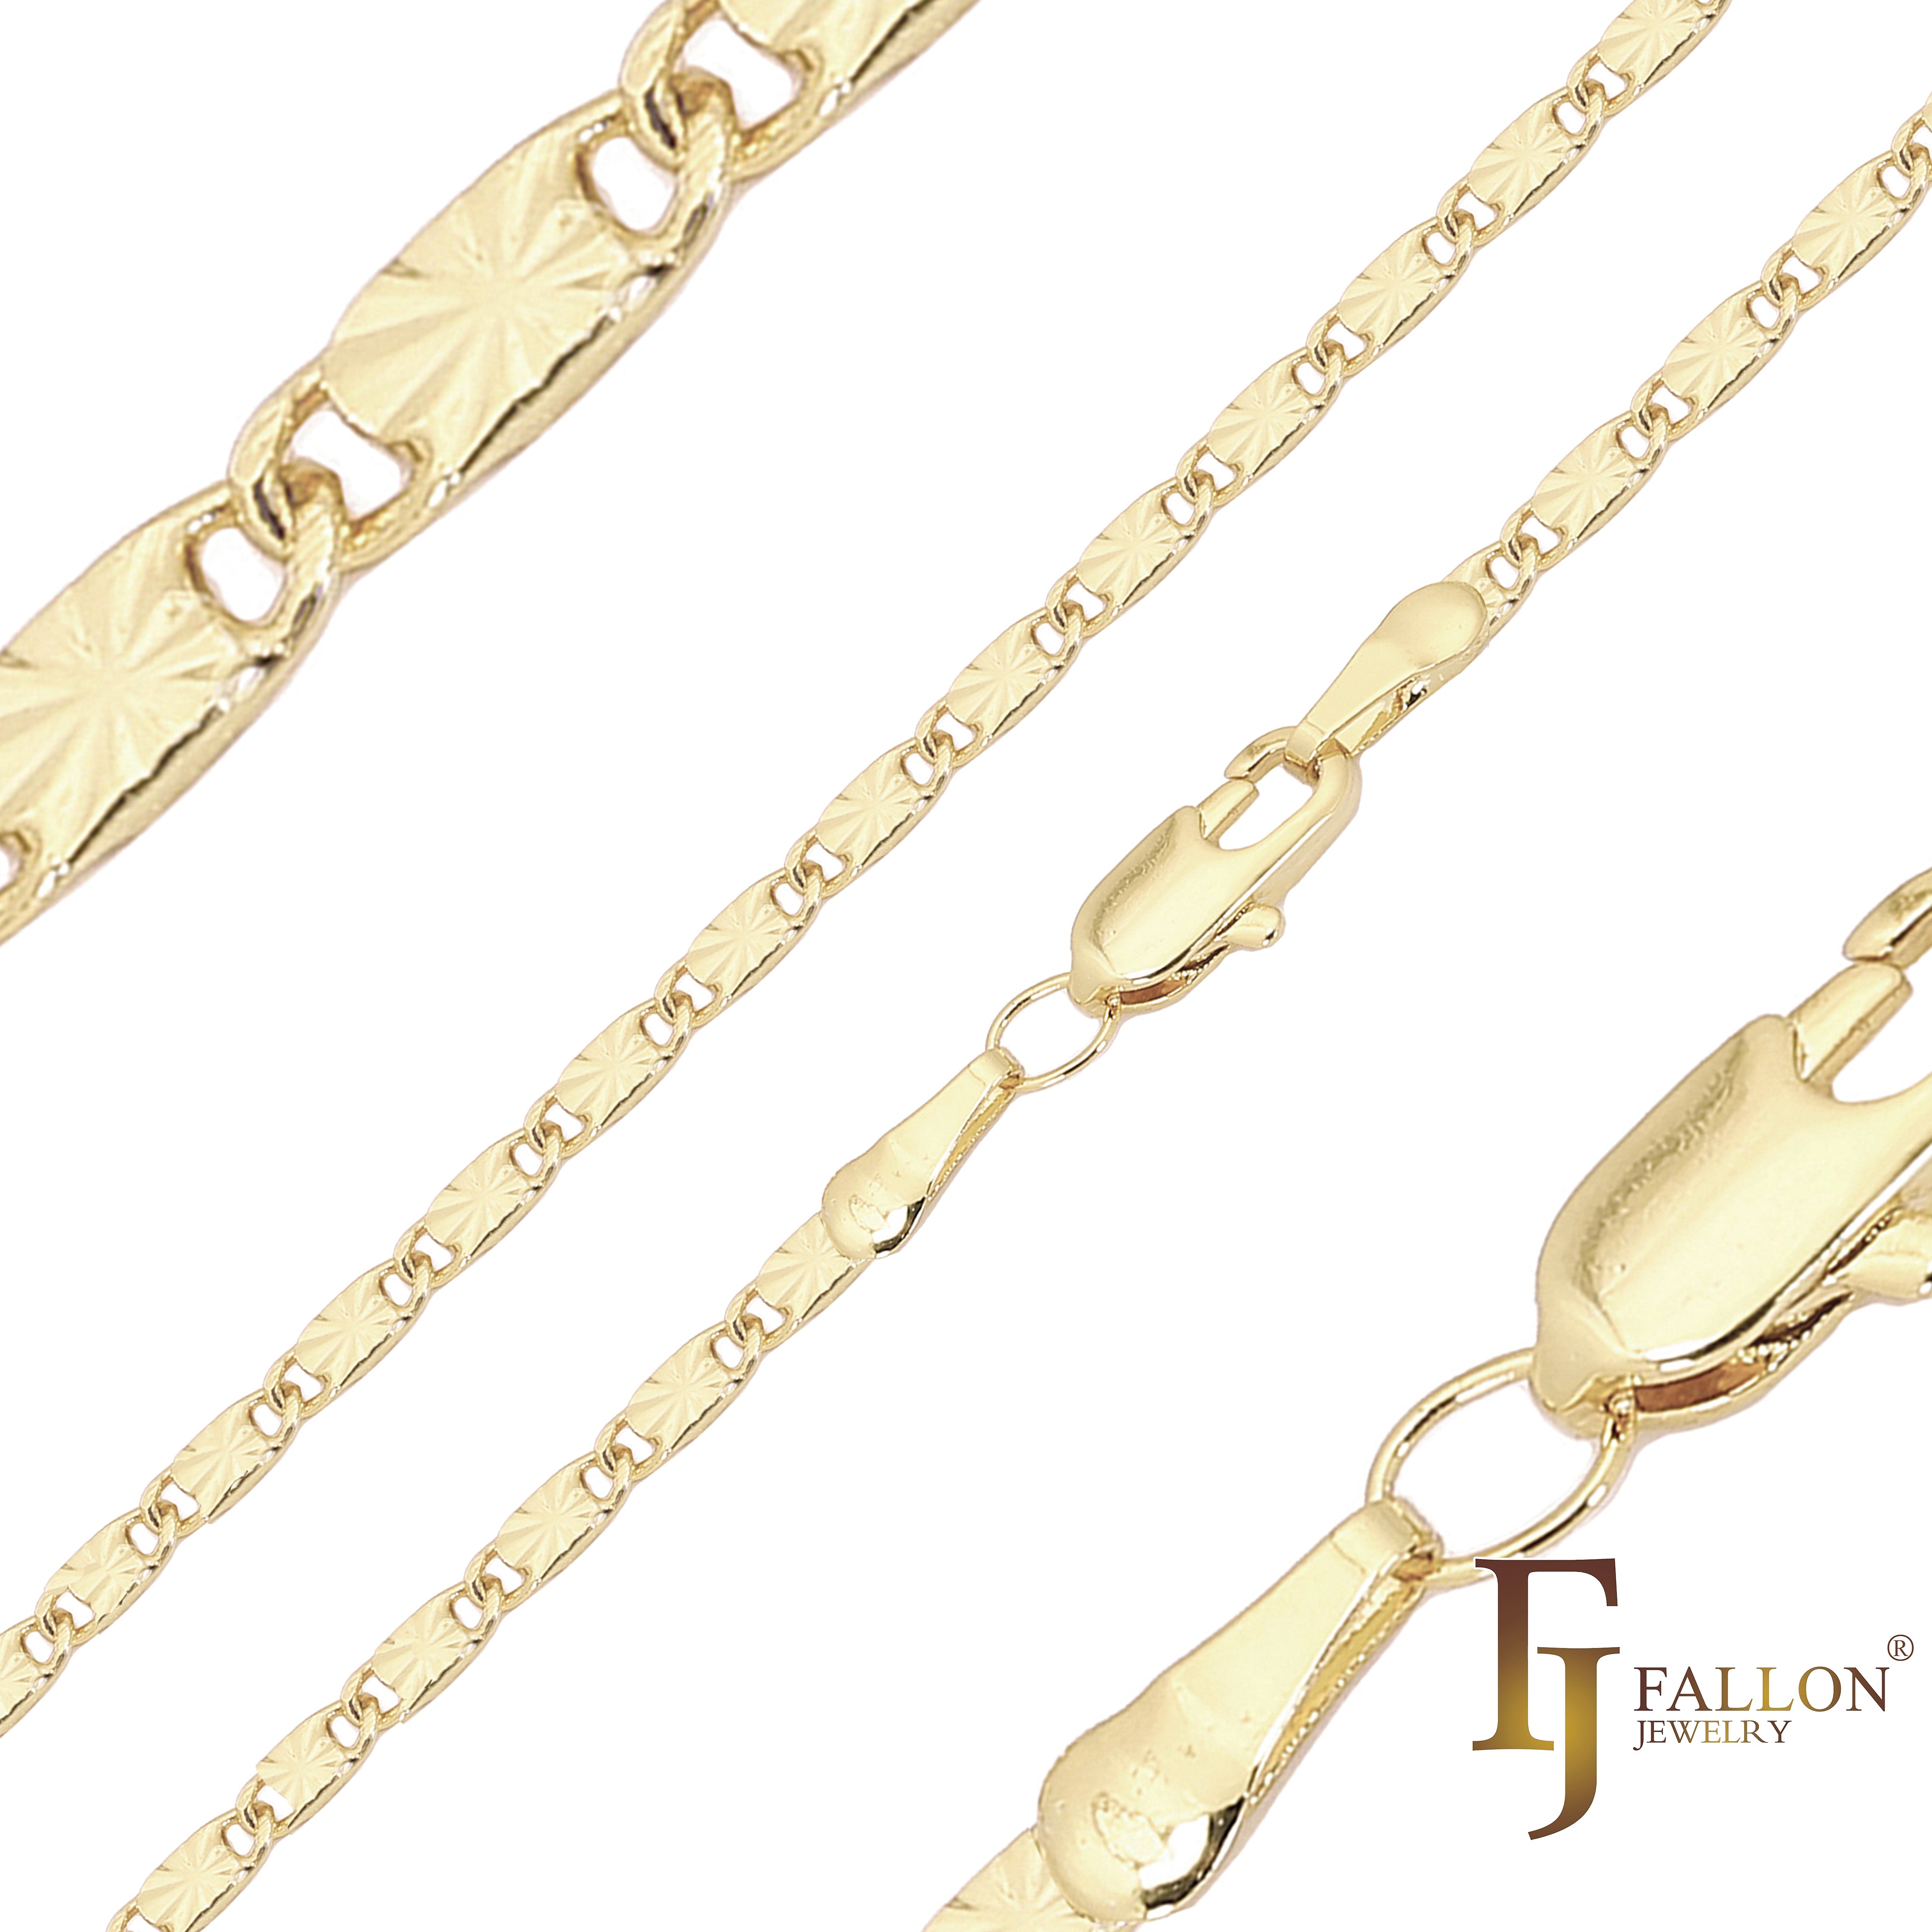 .Классические цельнолитые кованые цепи в форме улитки с солнечными лучами, покрытые белым золотом, 14-каратным золотом, розовым золотом, двухцветные